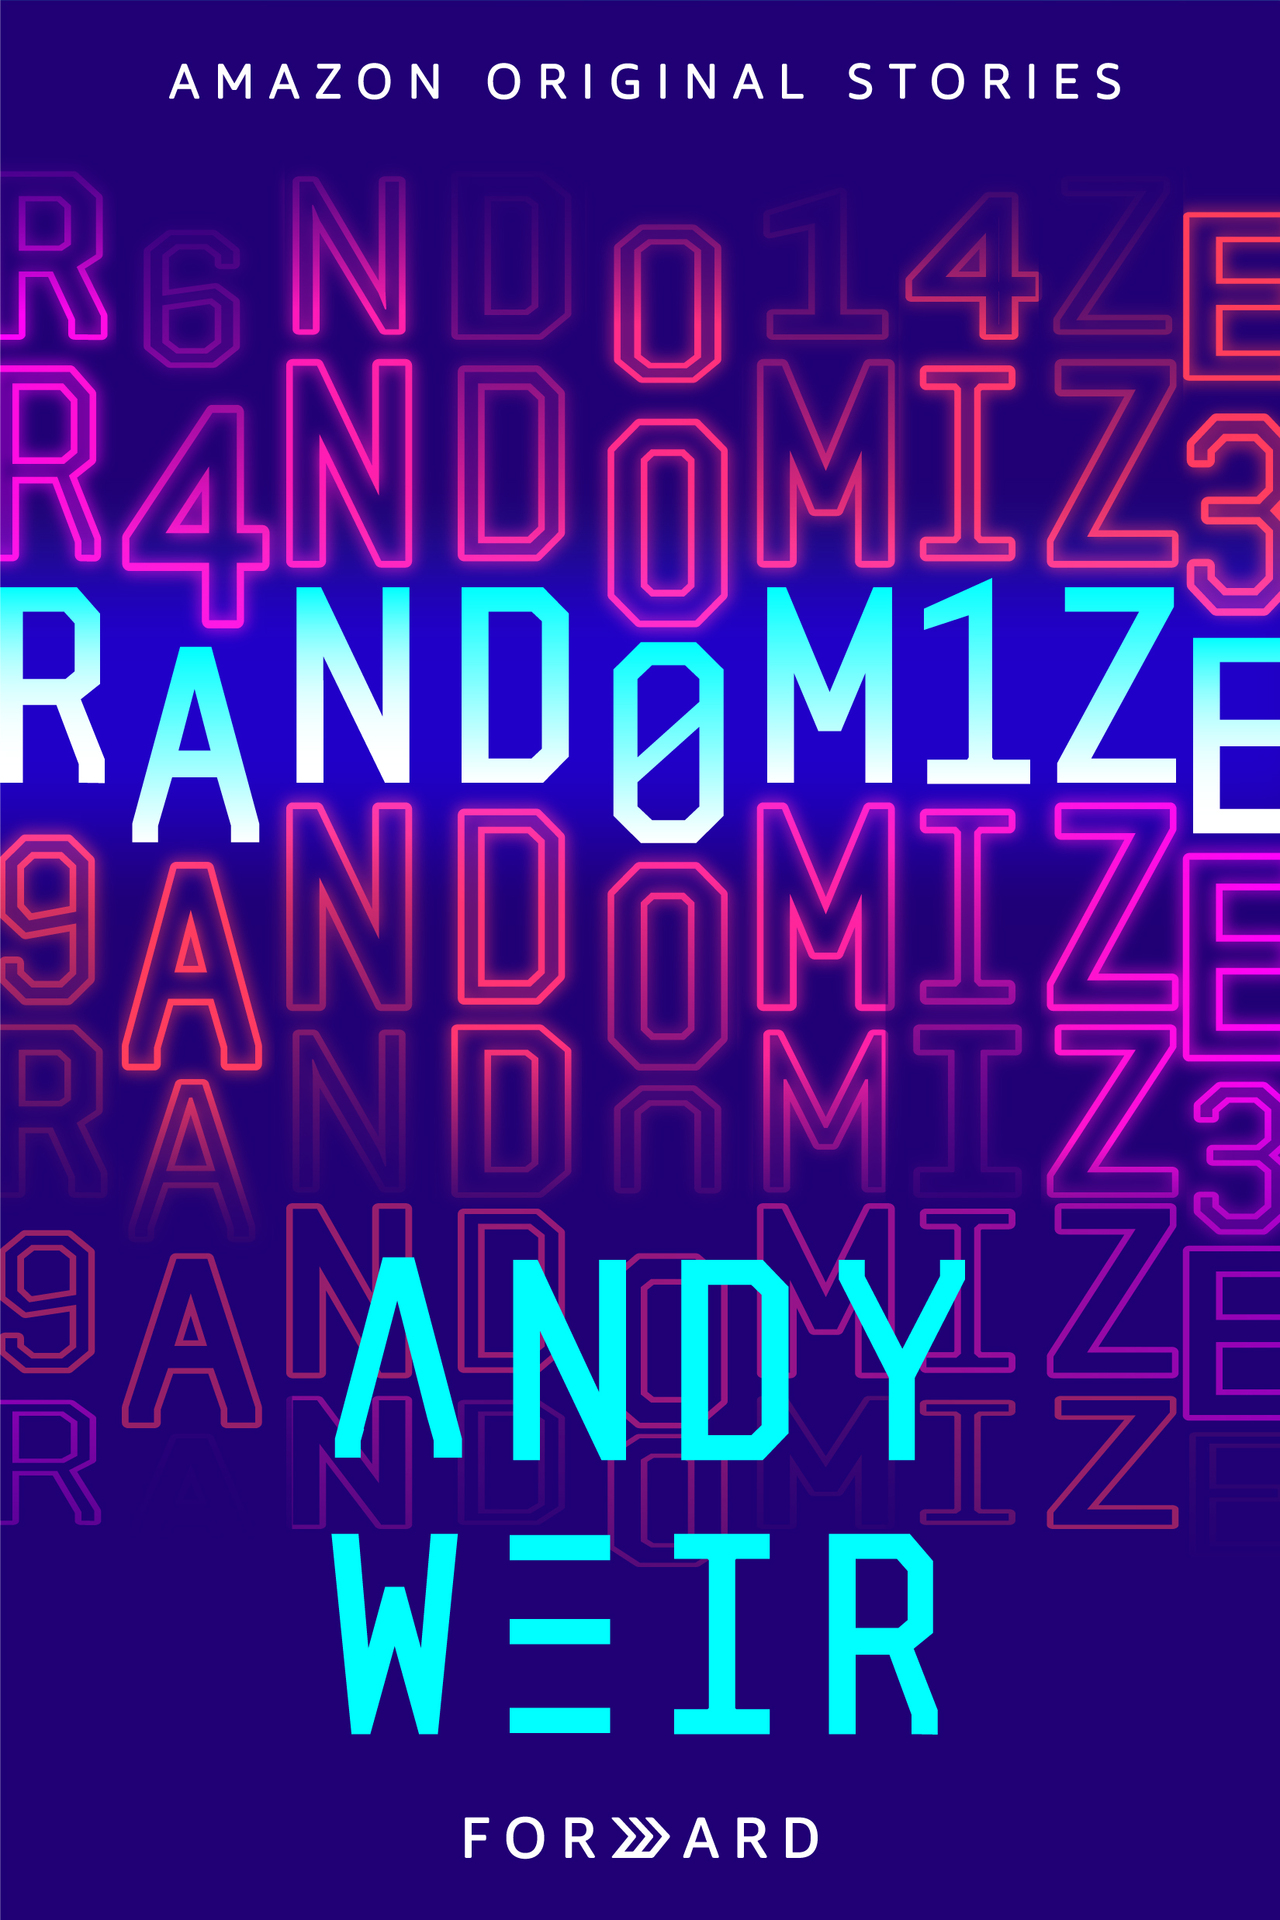 Randomize (Forward collection)